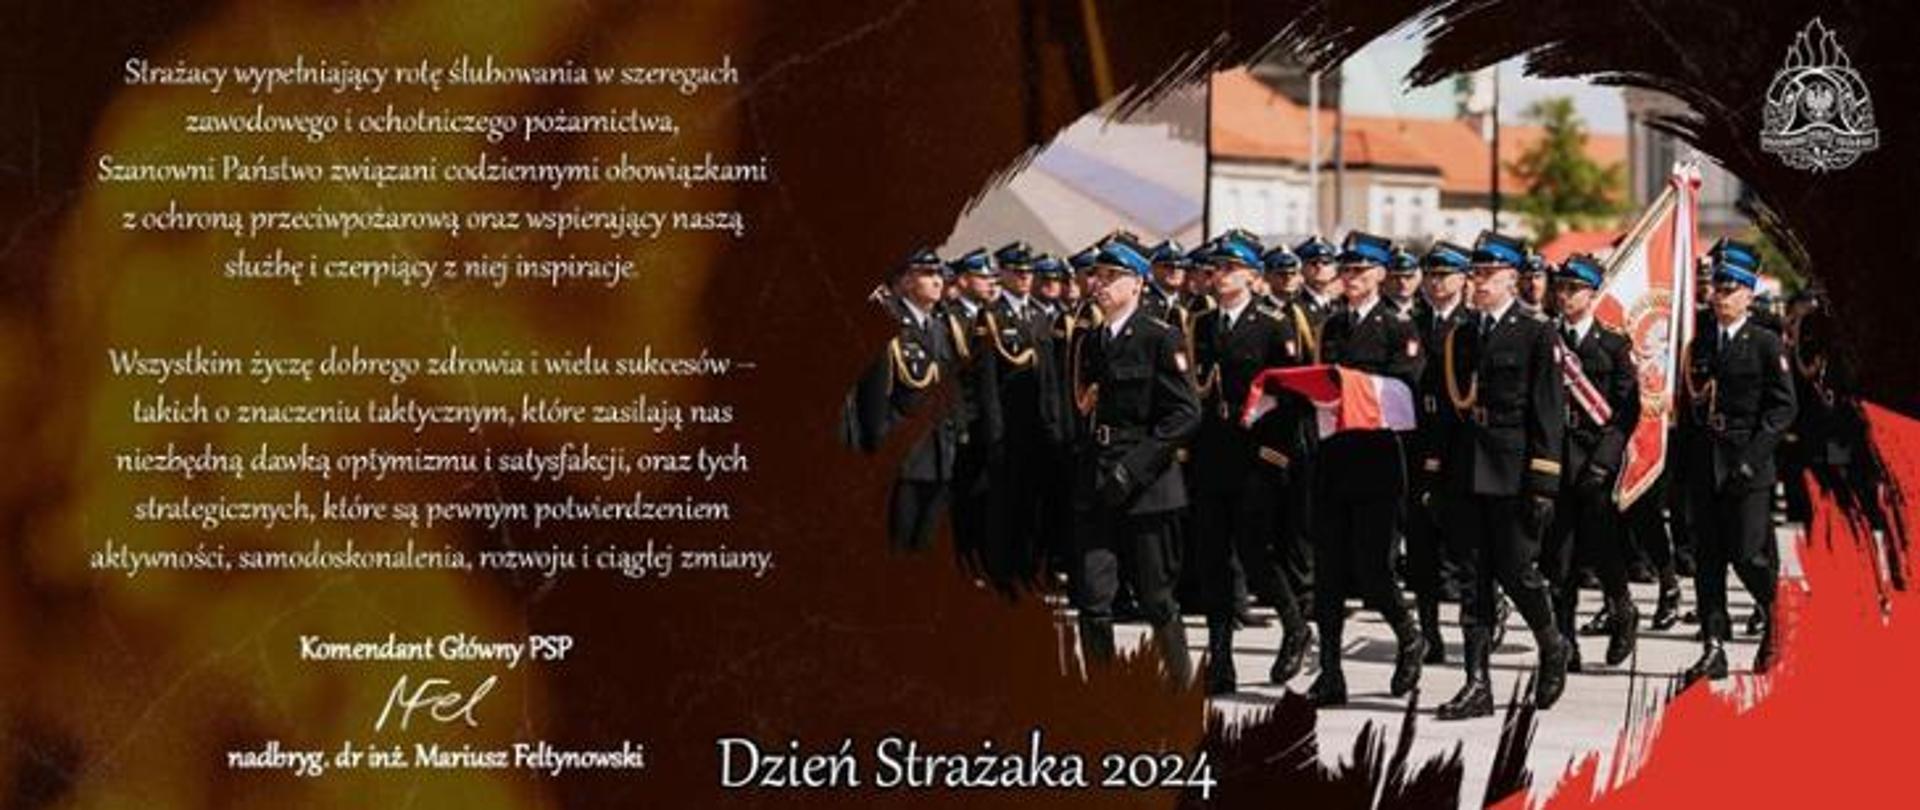 Po lewej stronie zdjęcia treść życzeń składanych przez Komendanta Głównego PSP nadbryg. Mariusza Feltynowskiego. Po prawej stronie zdjęcie maszerującego pocztu flagowego, pocztu sztandarowego na tle pododdziałów strażaków stojących na placu.